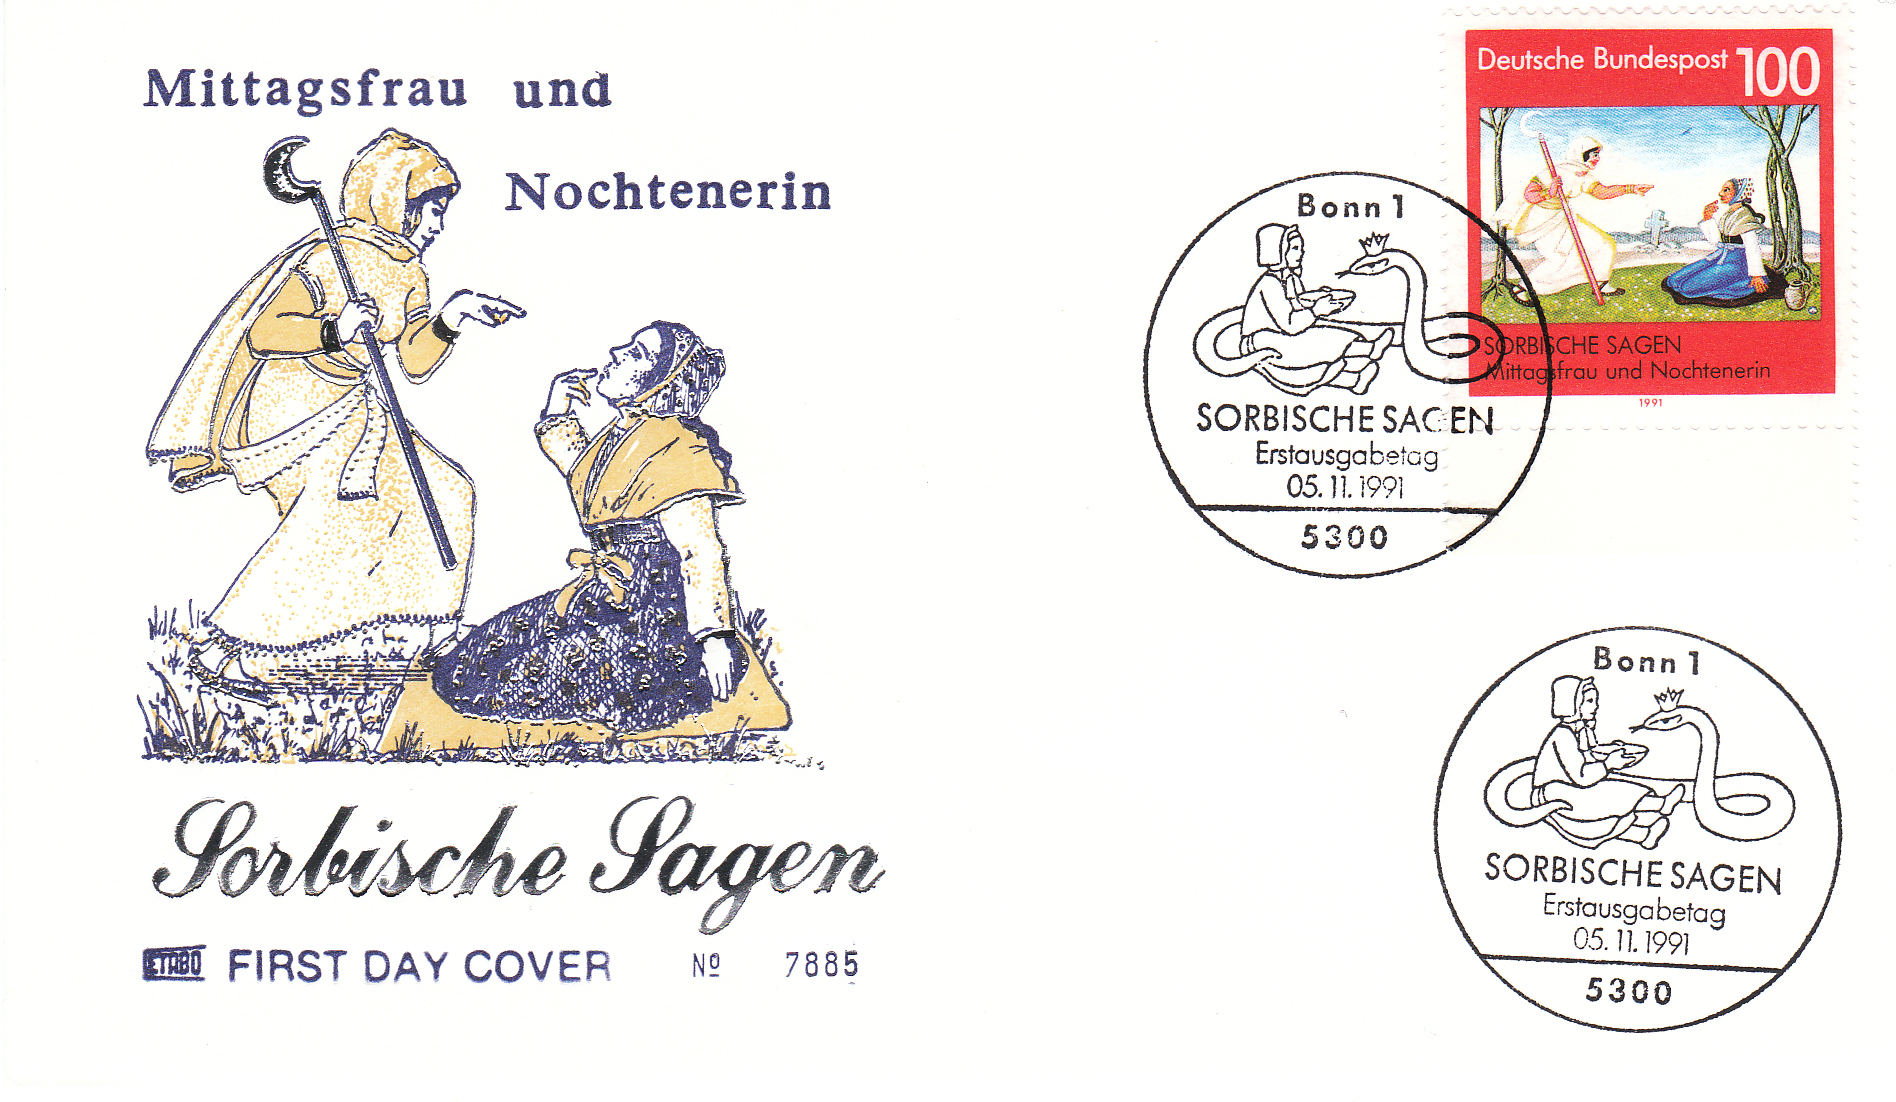 1991 Sorbische Sagen Mittagsfrau und Nochtenerin with silver highlight